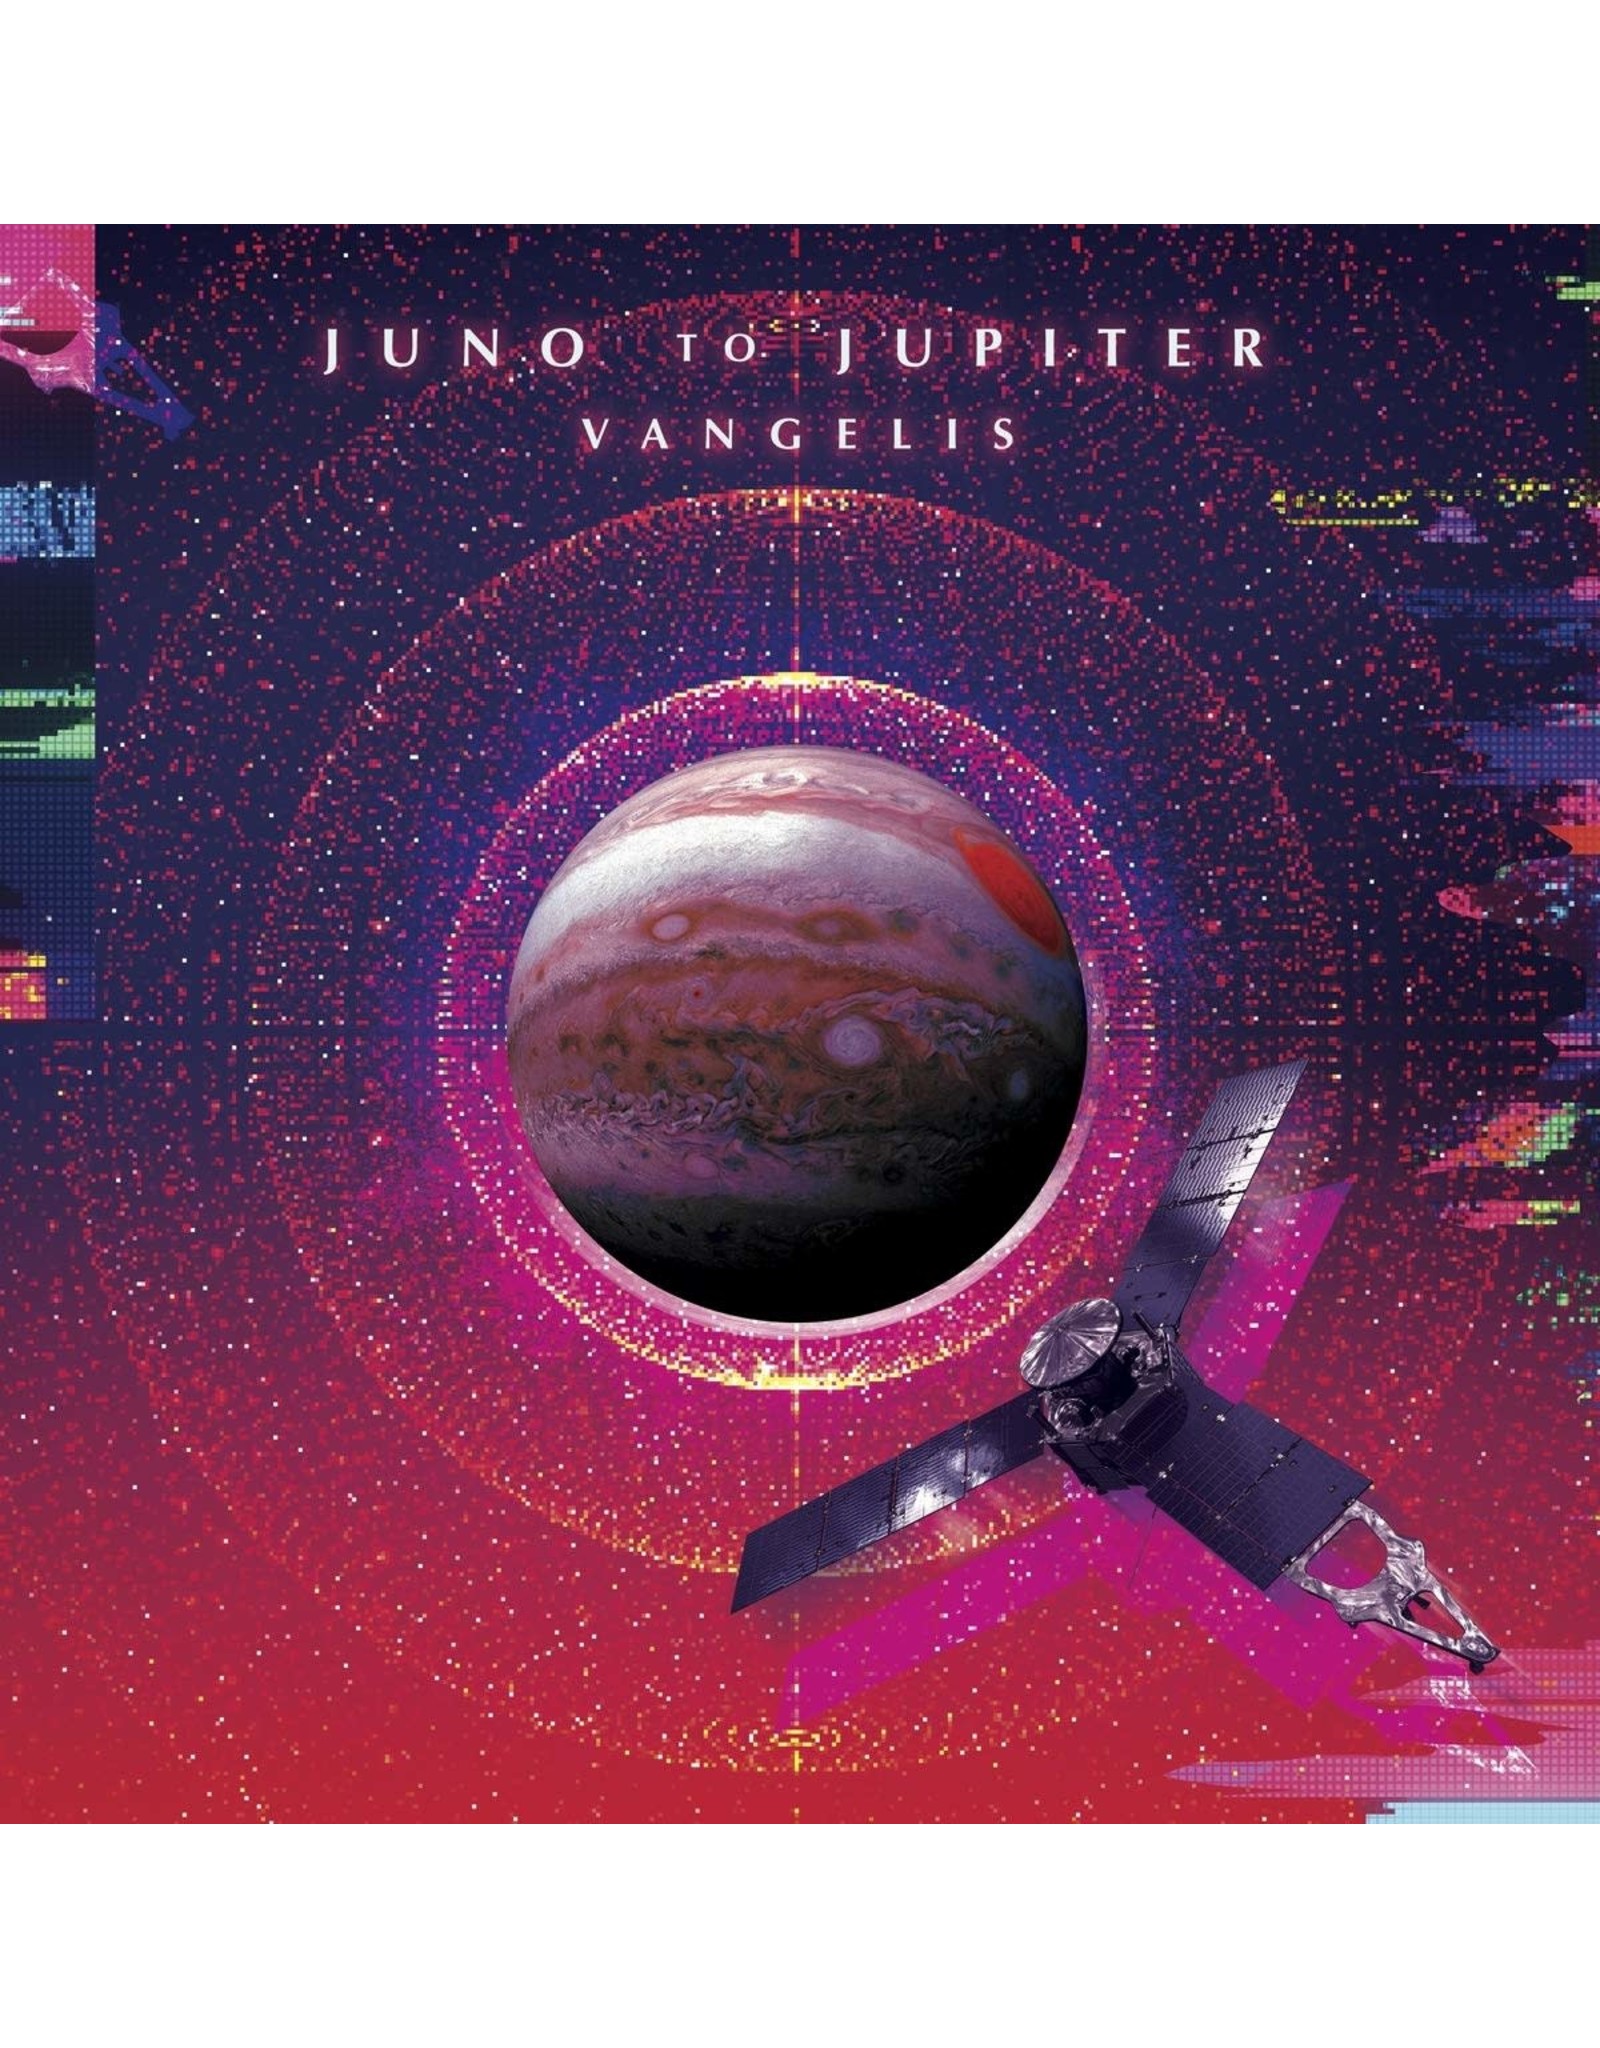 New Vinyl Vangelis - Juno to Jupiter 2LP